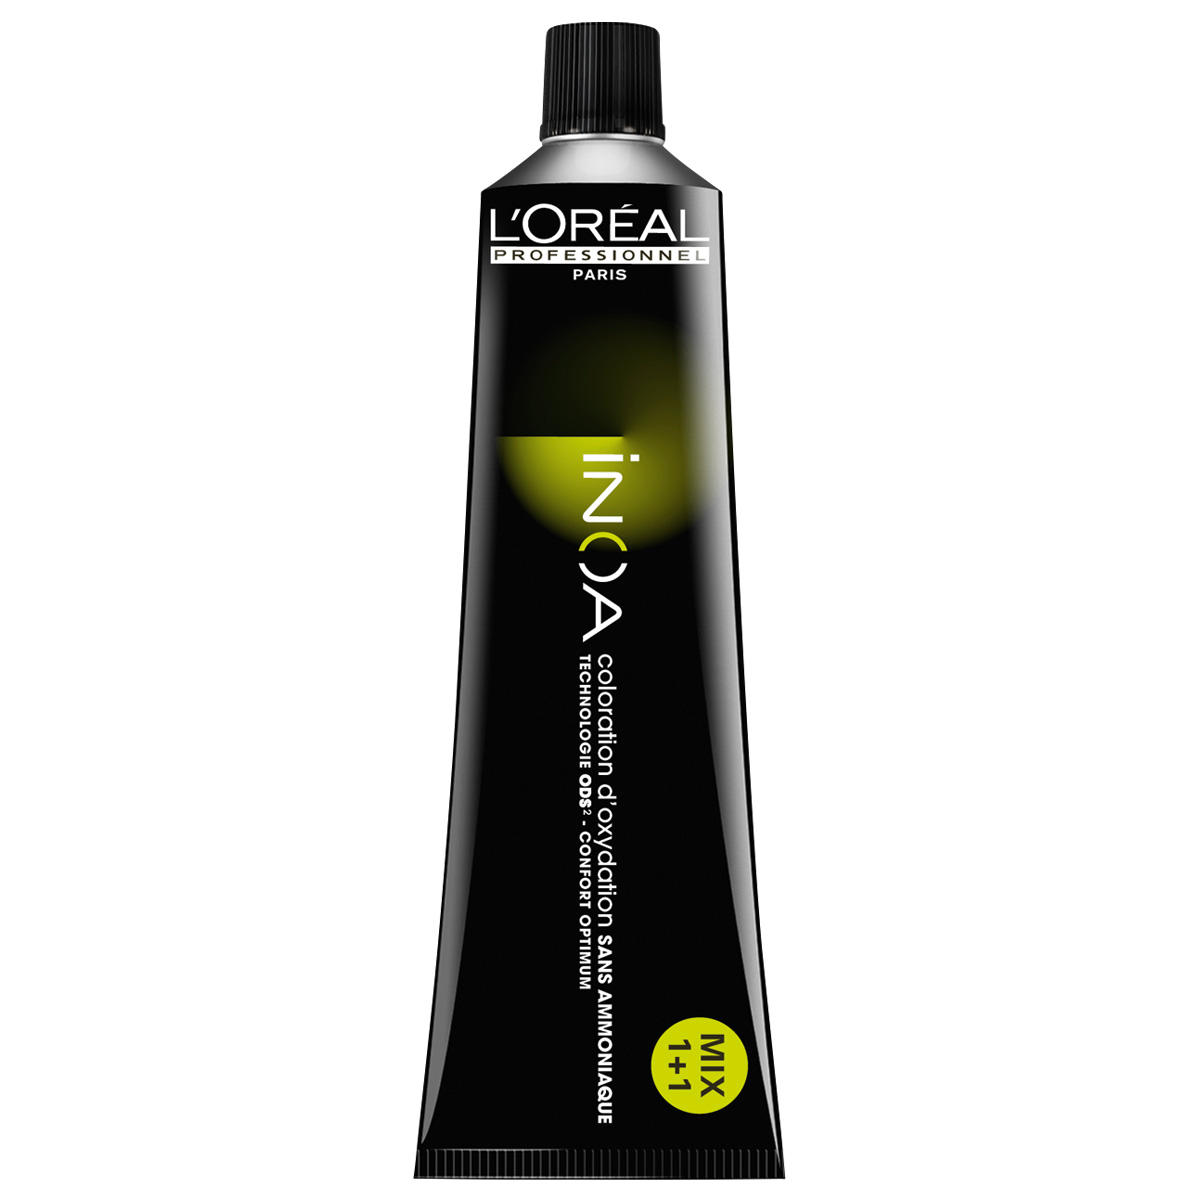 L'Oréal Professionnel Paris Coloration 5.12 Irisé marrone chiaro, tubo da 60 ml